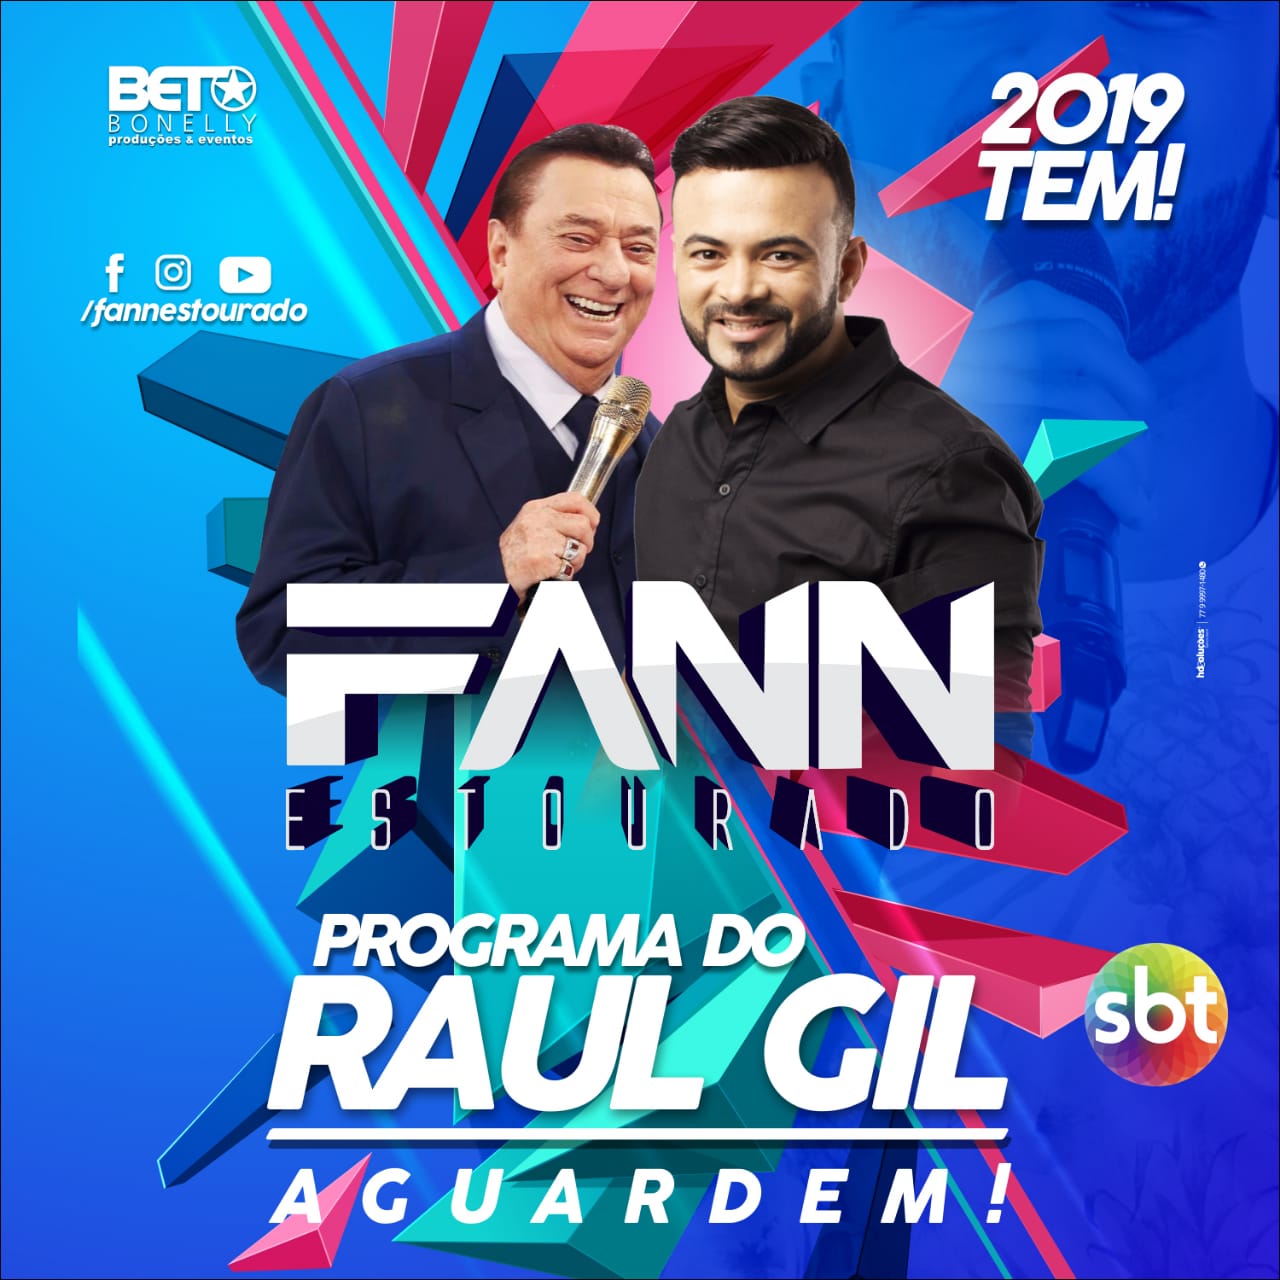 Fann Estourado tem apresentação confirmada pelo SBT no Programa Raul Gil em 2019